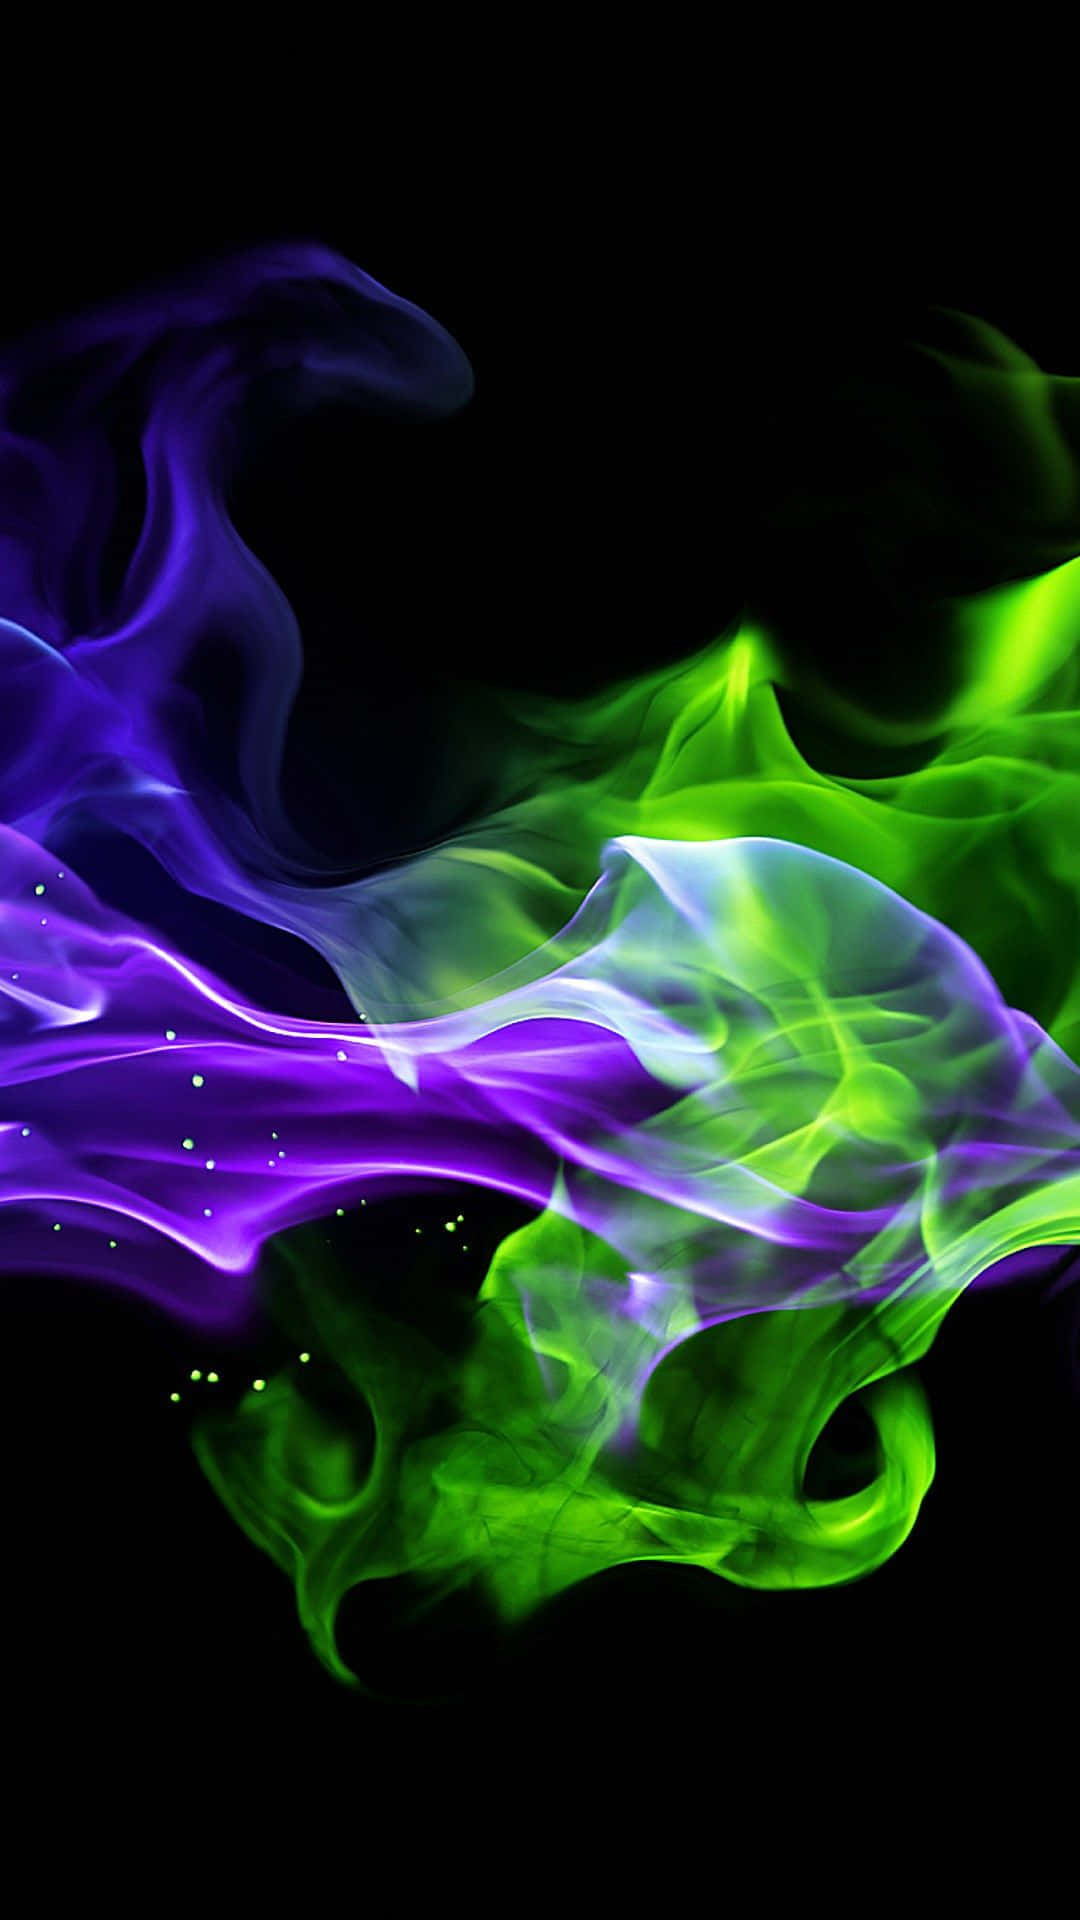 Lasbrillantes Tonalidades De Verde Neón Y Púrpura En Contraste Con Un Fondo Oscuro Crean Una Imagen Equilibrada Y Llamativa Fondo de pantalla